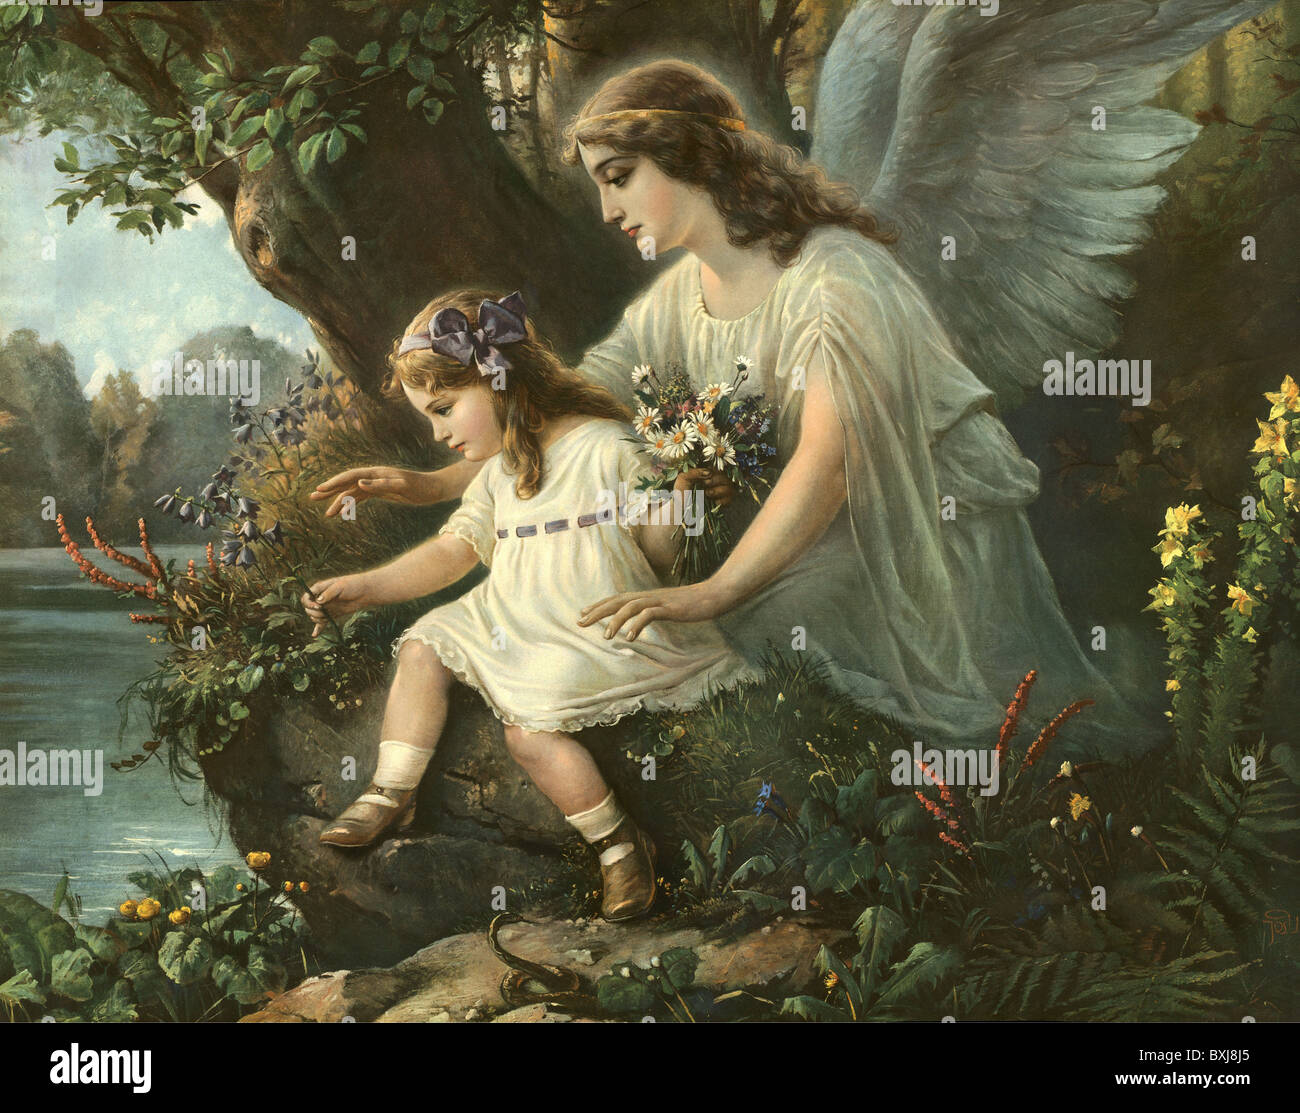 Religione, cristianesimo, angelo custode che protegge il bambino, Germania, circa 1905, diritti aggiuntivi-clearences-non disponibile Foto Stock